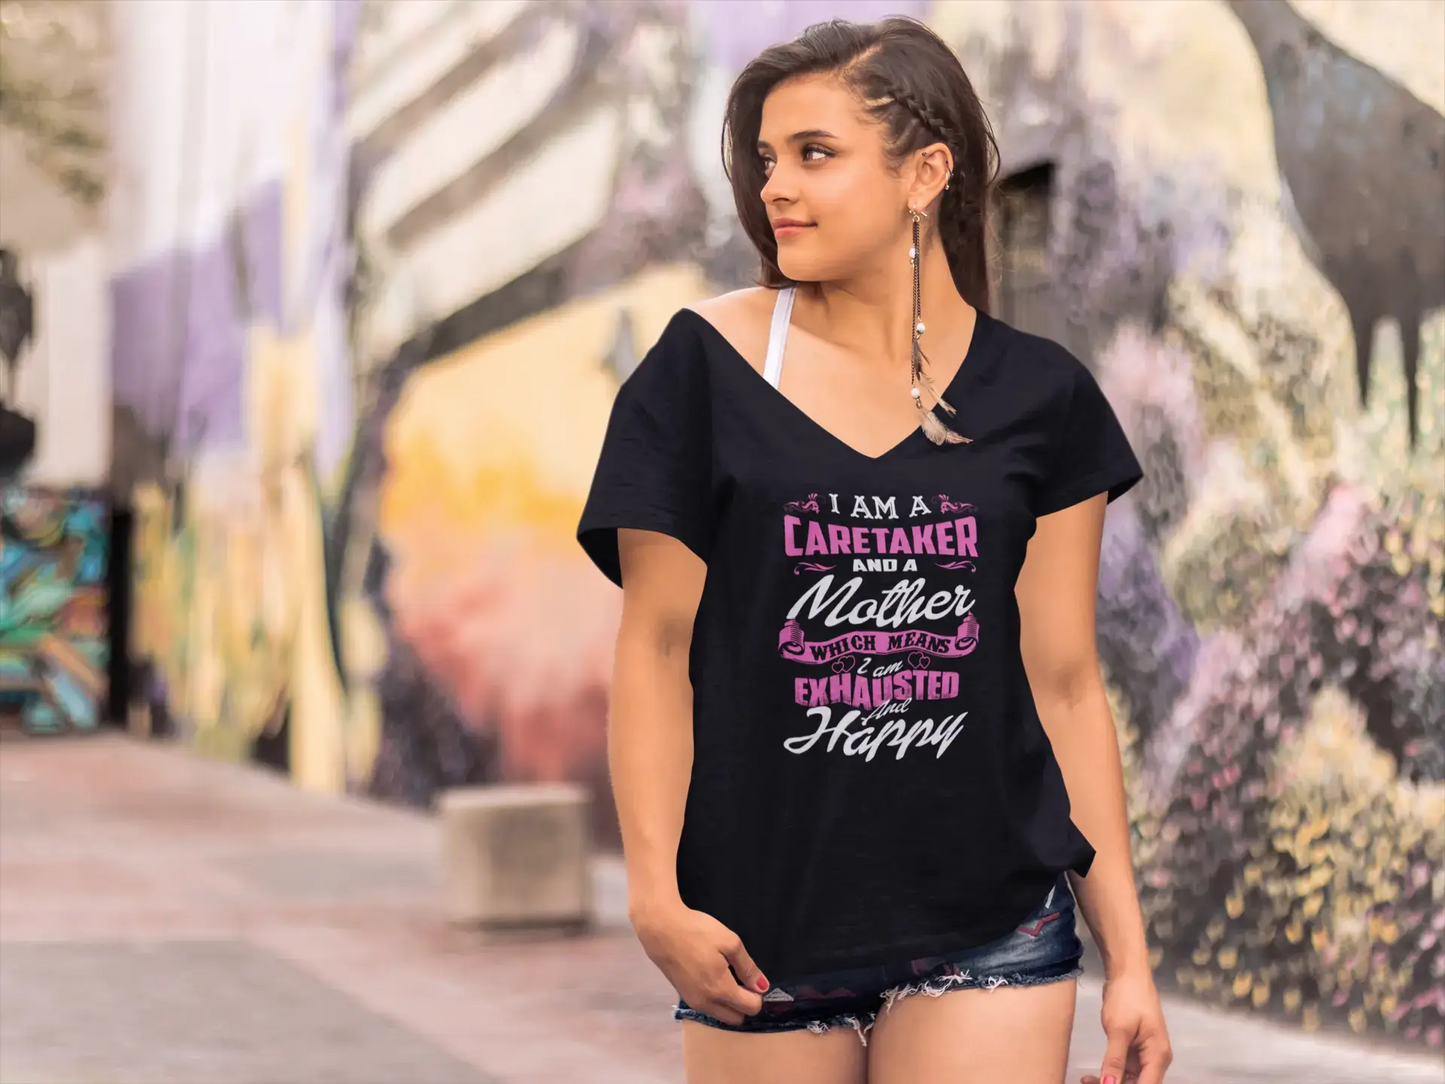 ULTRABASIC Neuheits-T-Shirt für Damen „I am a Caretaker and a Mother“ – lustige kurzärmelige T-Shirt-Oberteile